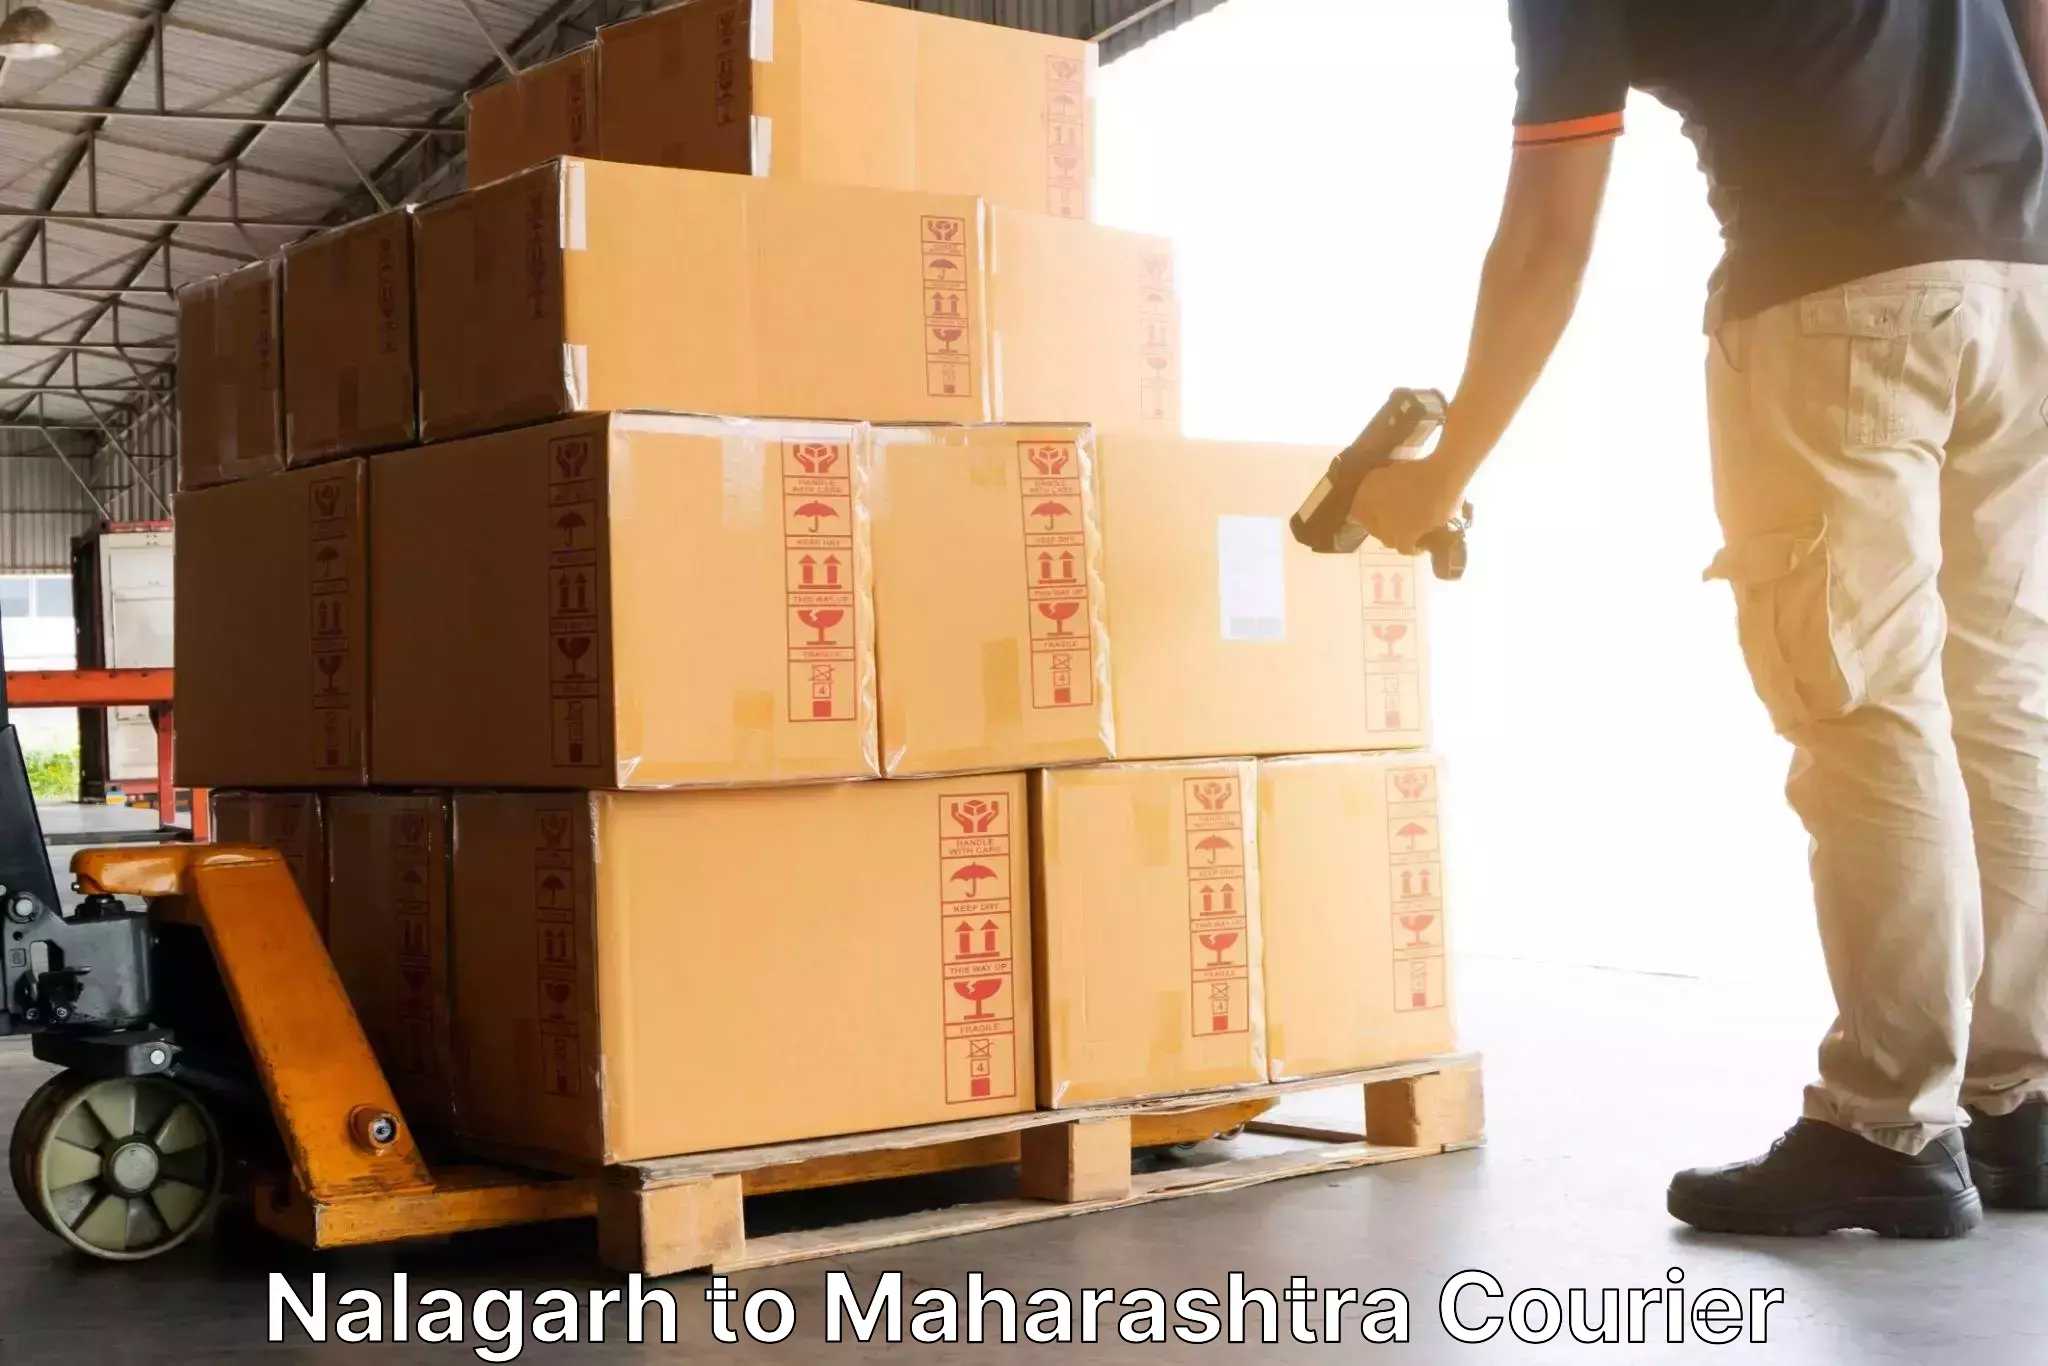 Global logistics network Nalagarh to Vaijapur